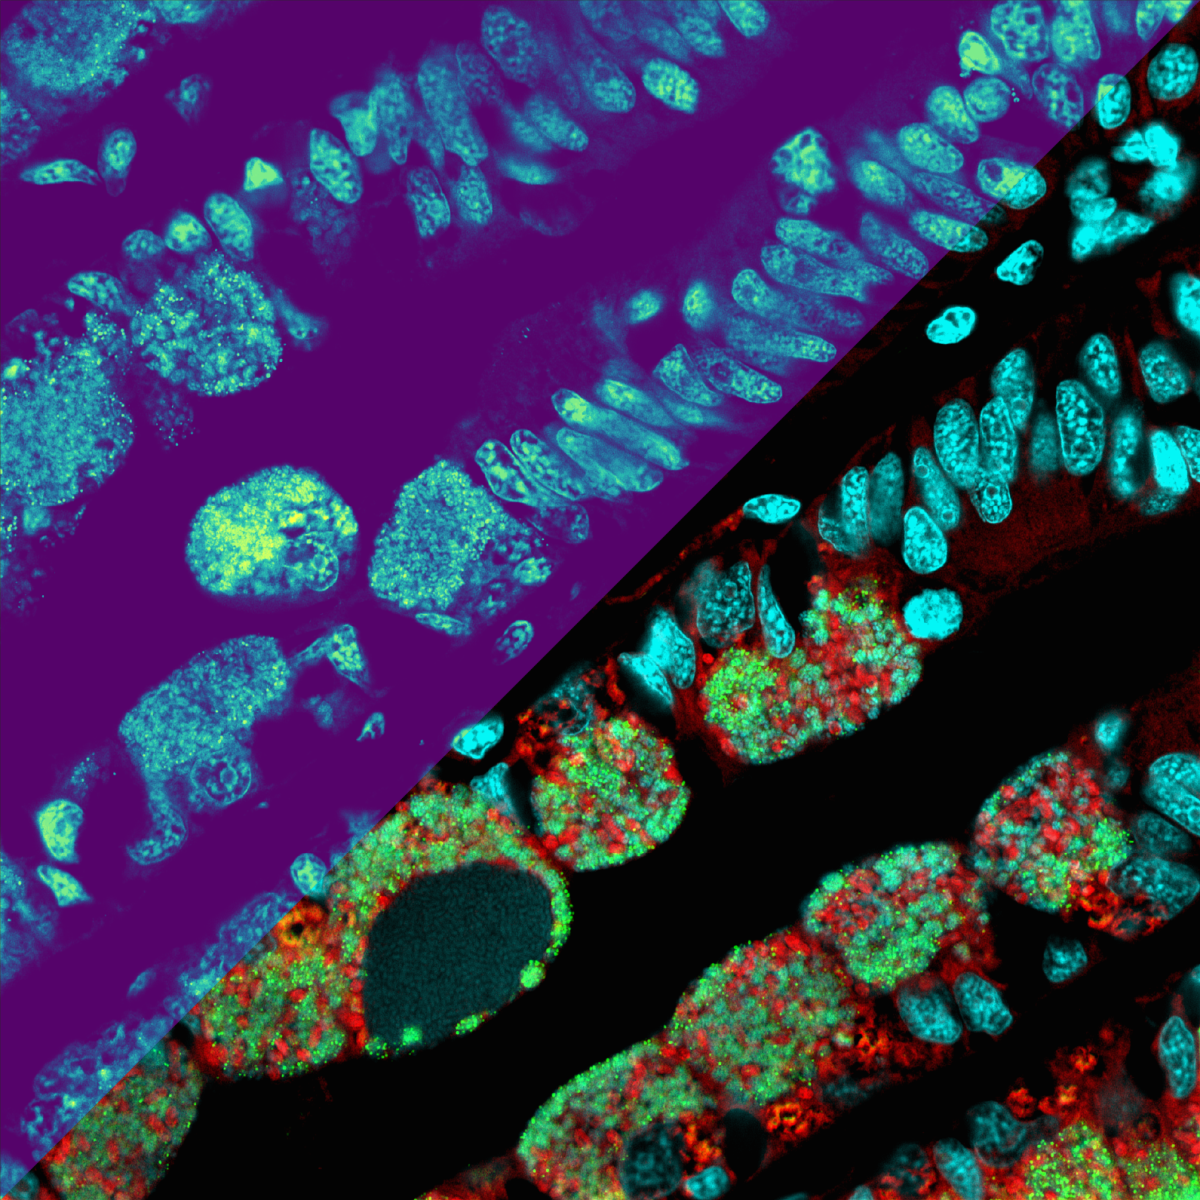 Die Metabolitenverteilungen als Heatmap (oberer linker Teil der Abbildung): je heller die Farbe, desto höher die Konzentration der Metabolite (Mikroskopie-MSI-Nachbildung zur Veranschaulichung). Die untere rechte Seite des Bildes zeigt mikroskopische Details der Mikroben (in Rot und Grün) und der Muschelzellkerne (Cyan). (© Max-Planck-Institut für Marine Mikrobiologie / B. Geier)